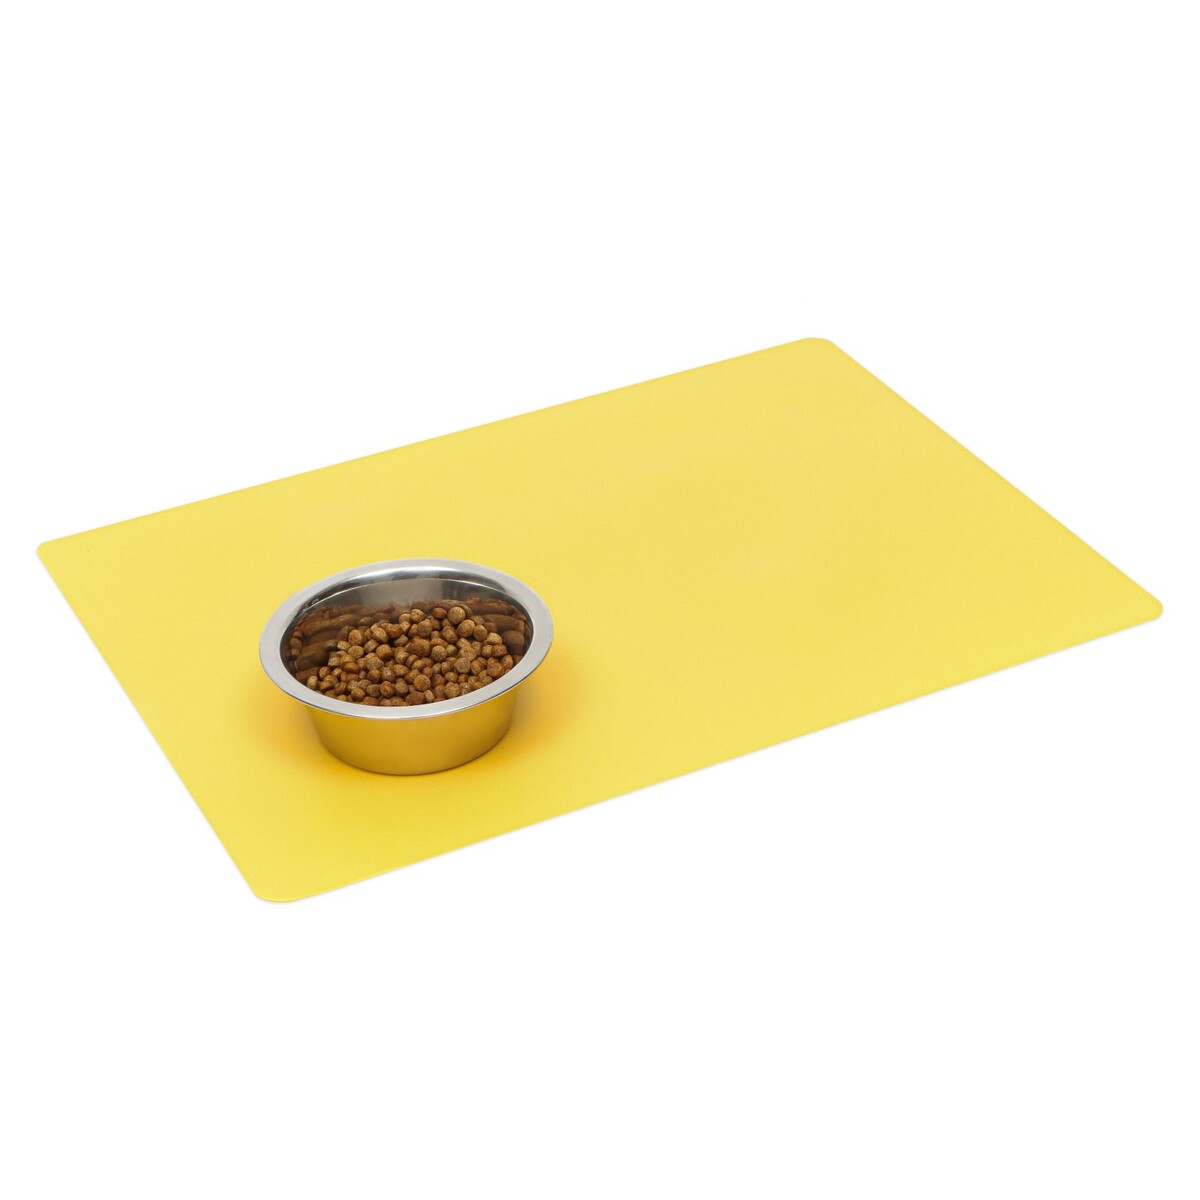 Коврик силиконовый под миску, 40 х 30 см, желтый коврик силиконовый под миску с текстурой 48 х 30 см темно серый